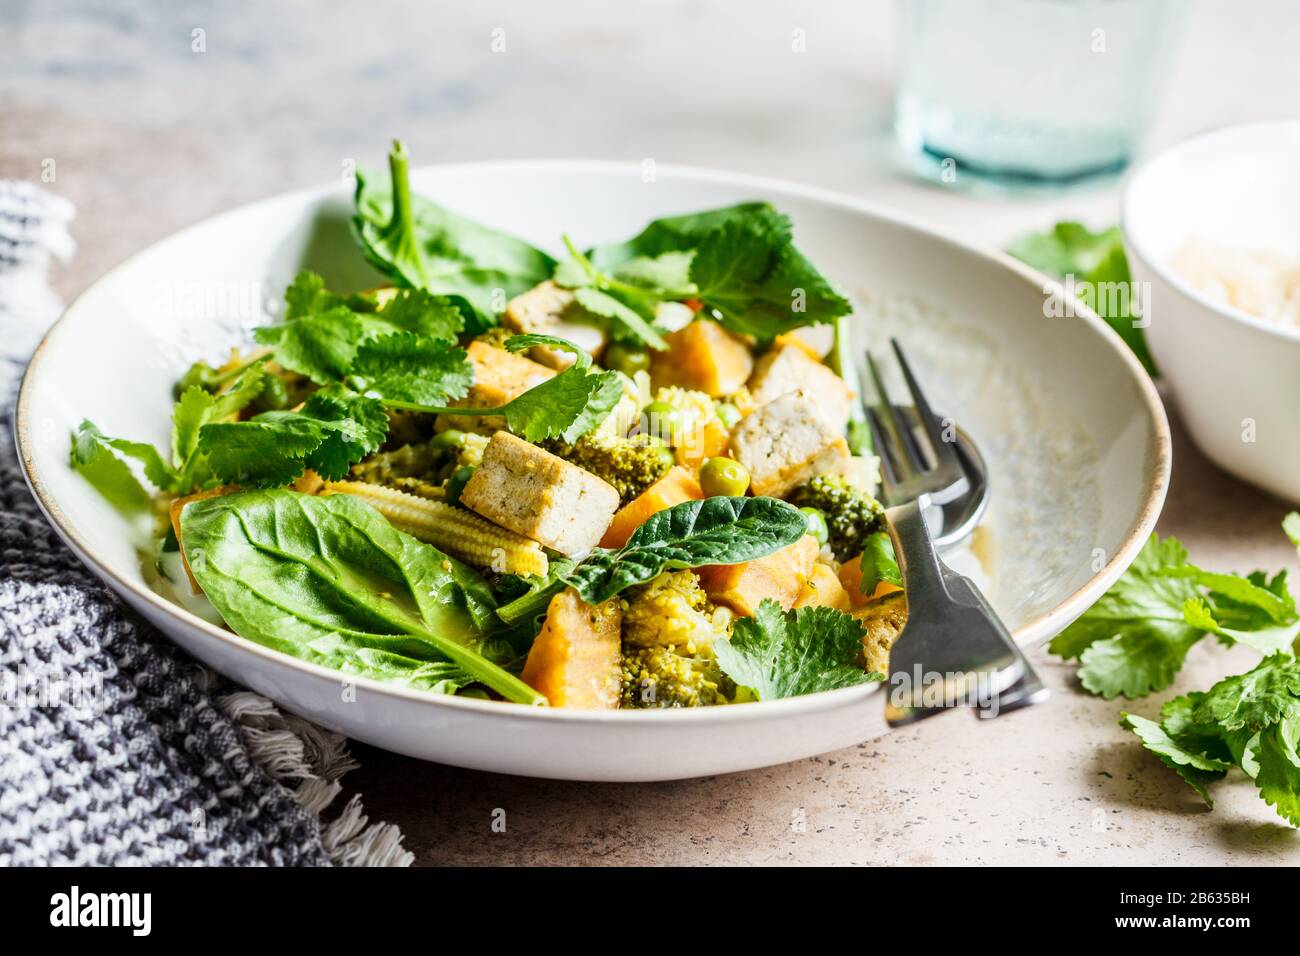 Curry vert végétalien avec tofu, patate douce, maïs et épinards. Concept de nourriture végétalienne saine. Banque D'Images